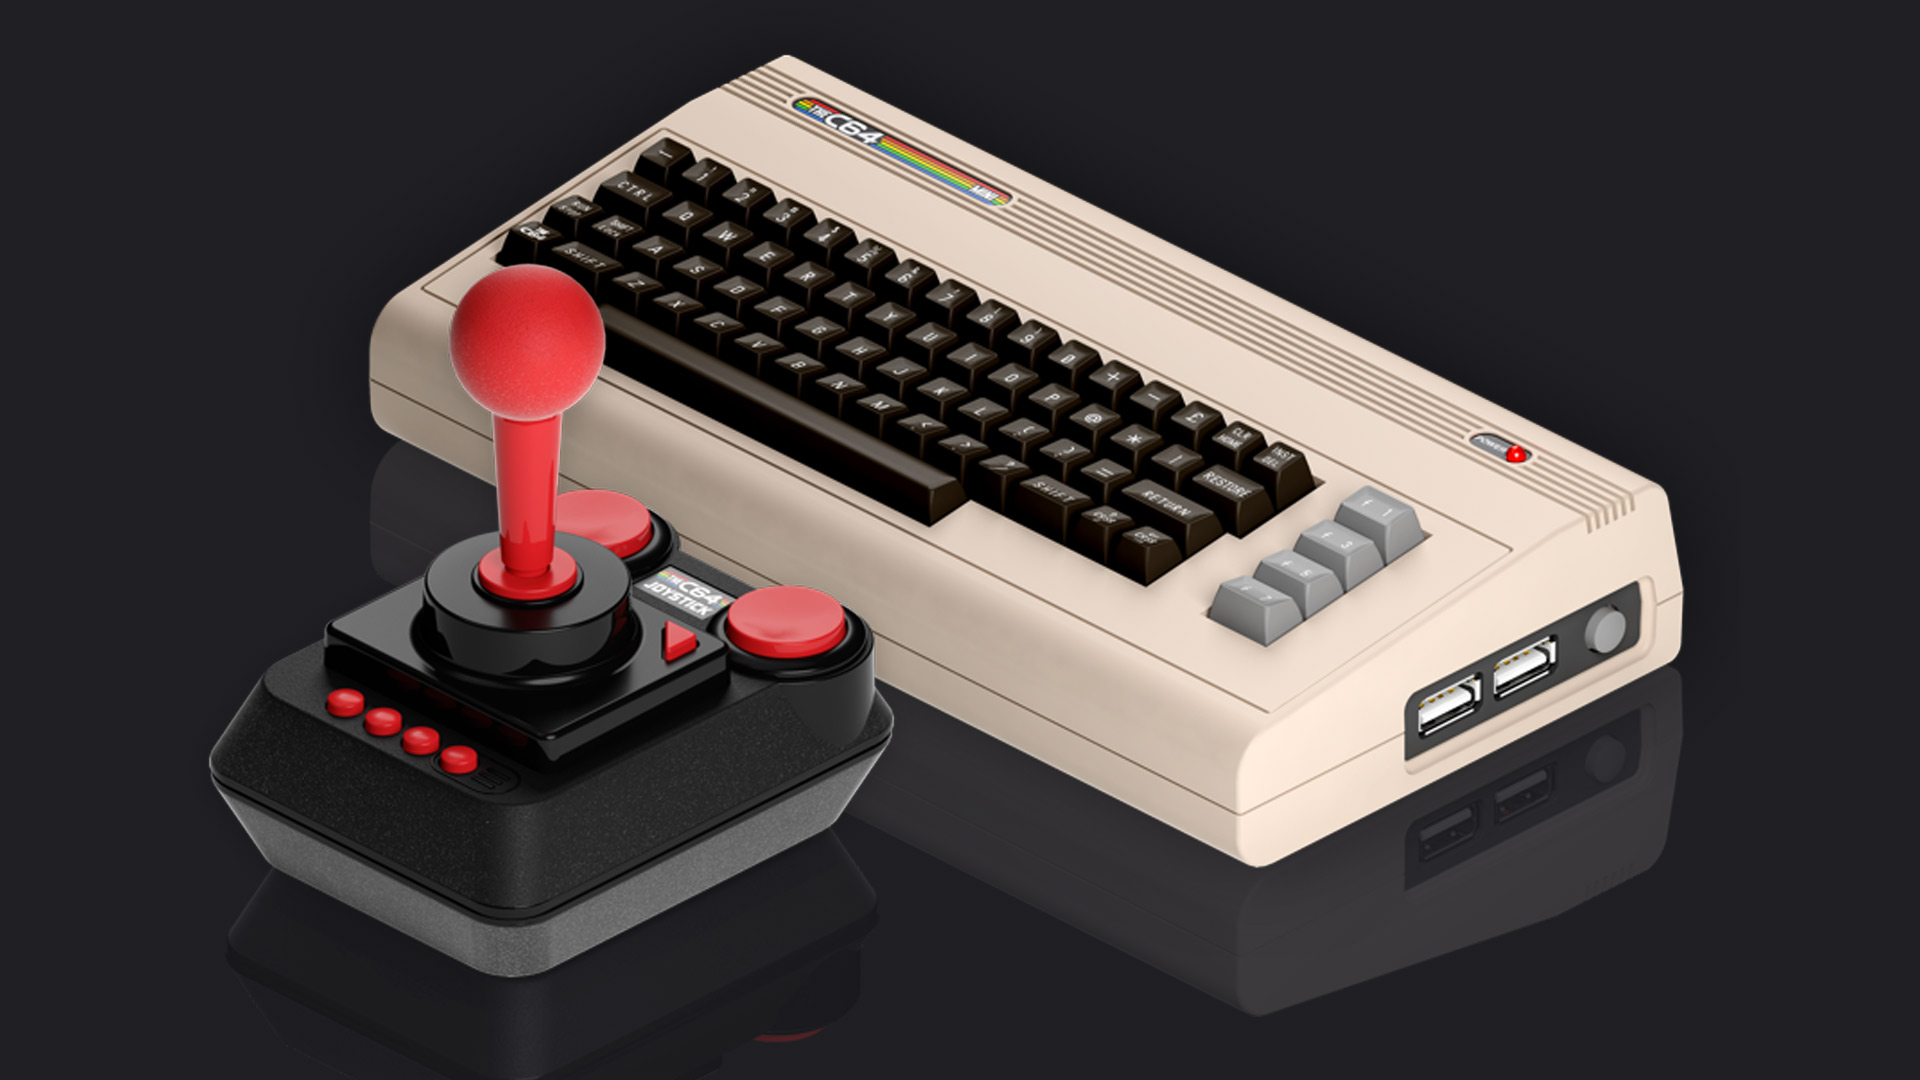 THEC64 Mini | Commodore 64